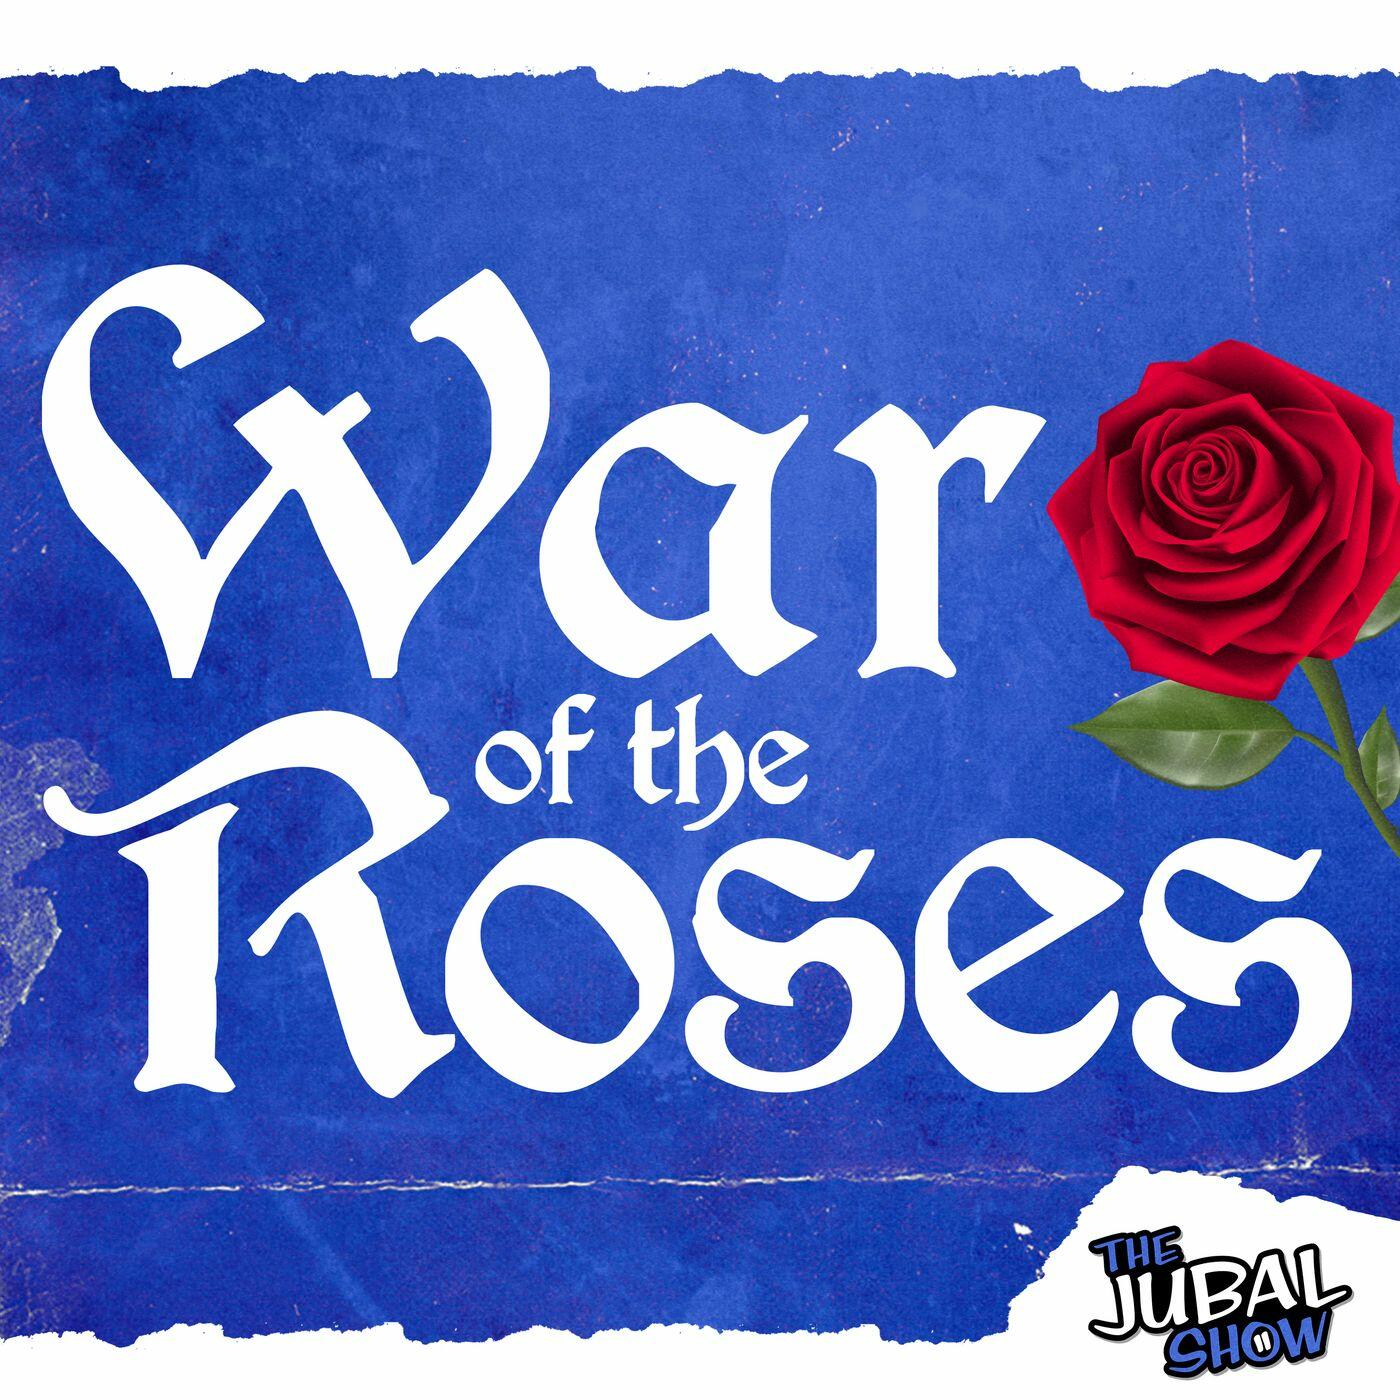 War of the roses korean drama english subtitles